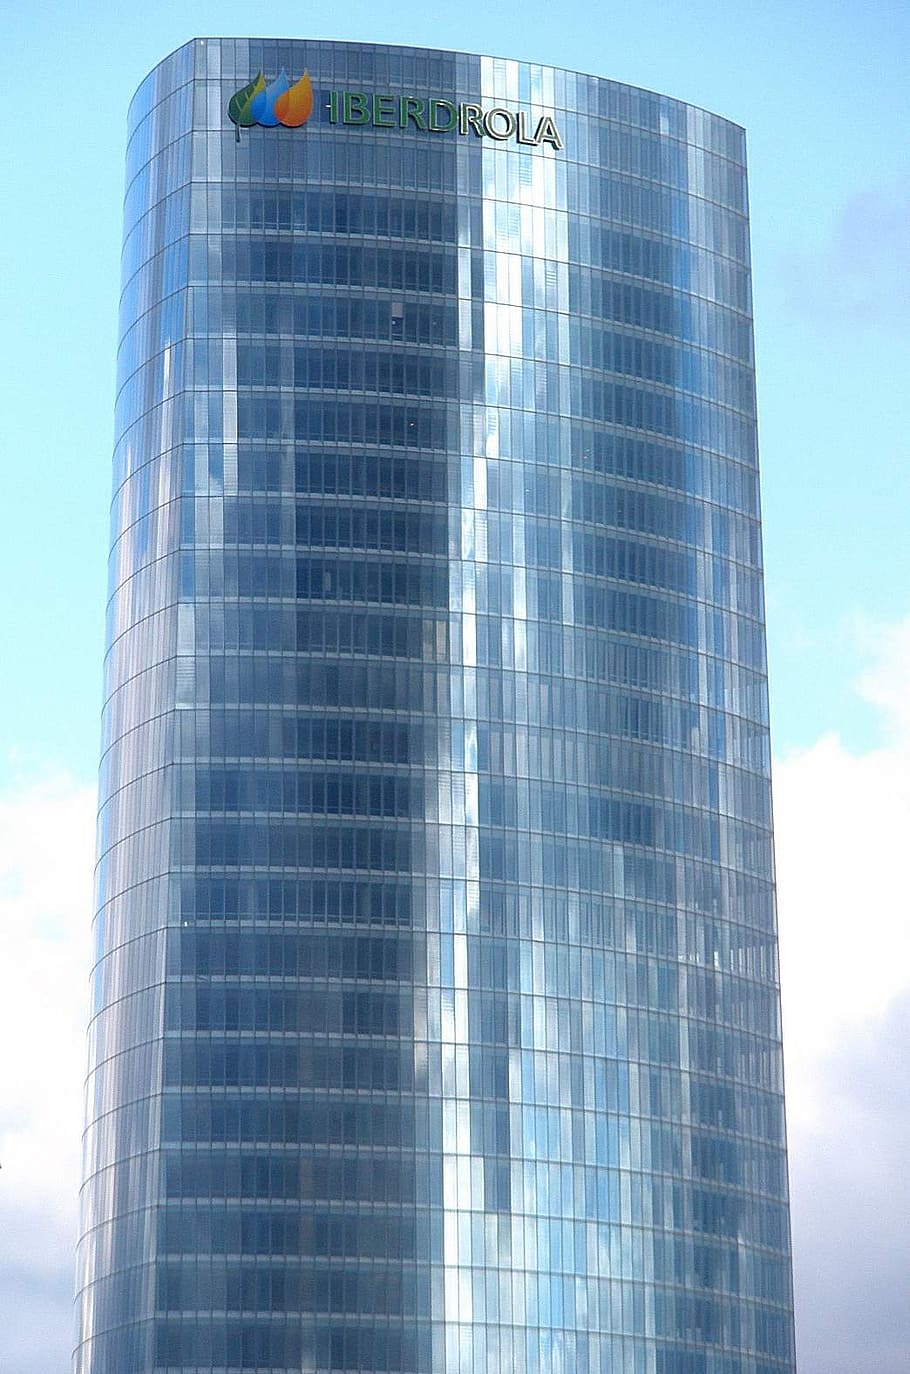 Torre iberdrola, bilbao, rascacielos, edificio, moderno, españa, urbano, arquitectura, cielo, día